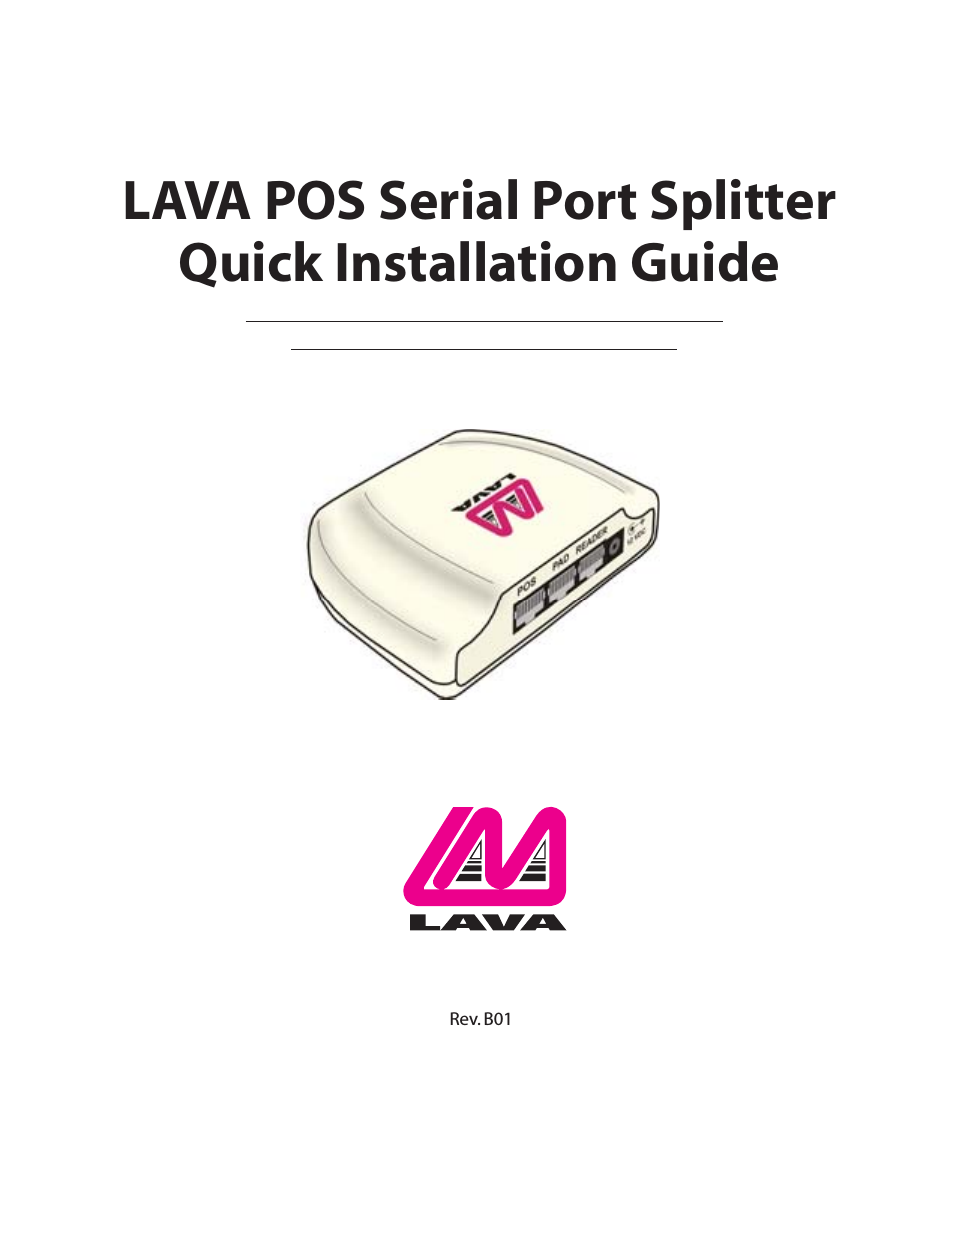 Serial Port Splitter LAVA POS